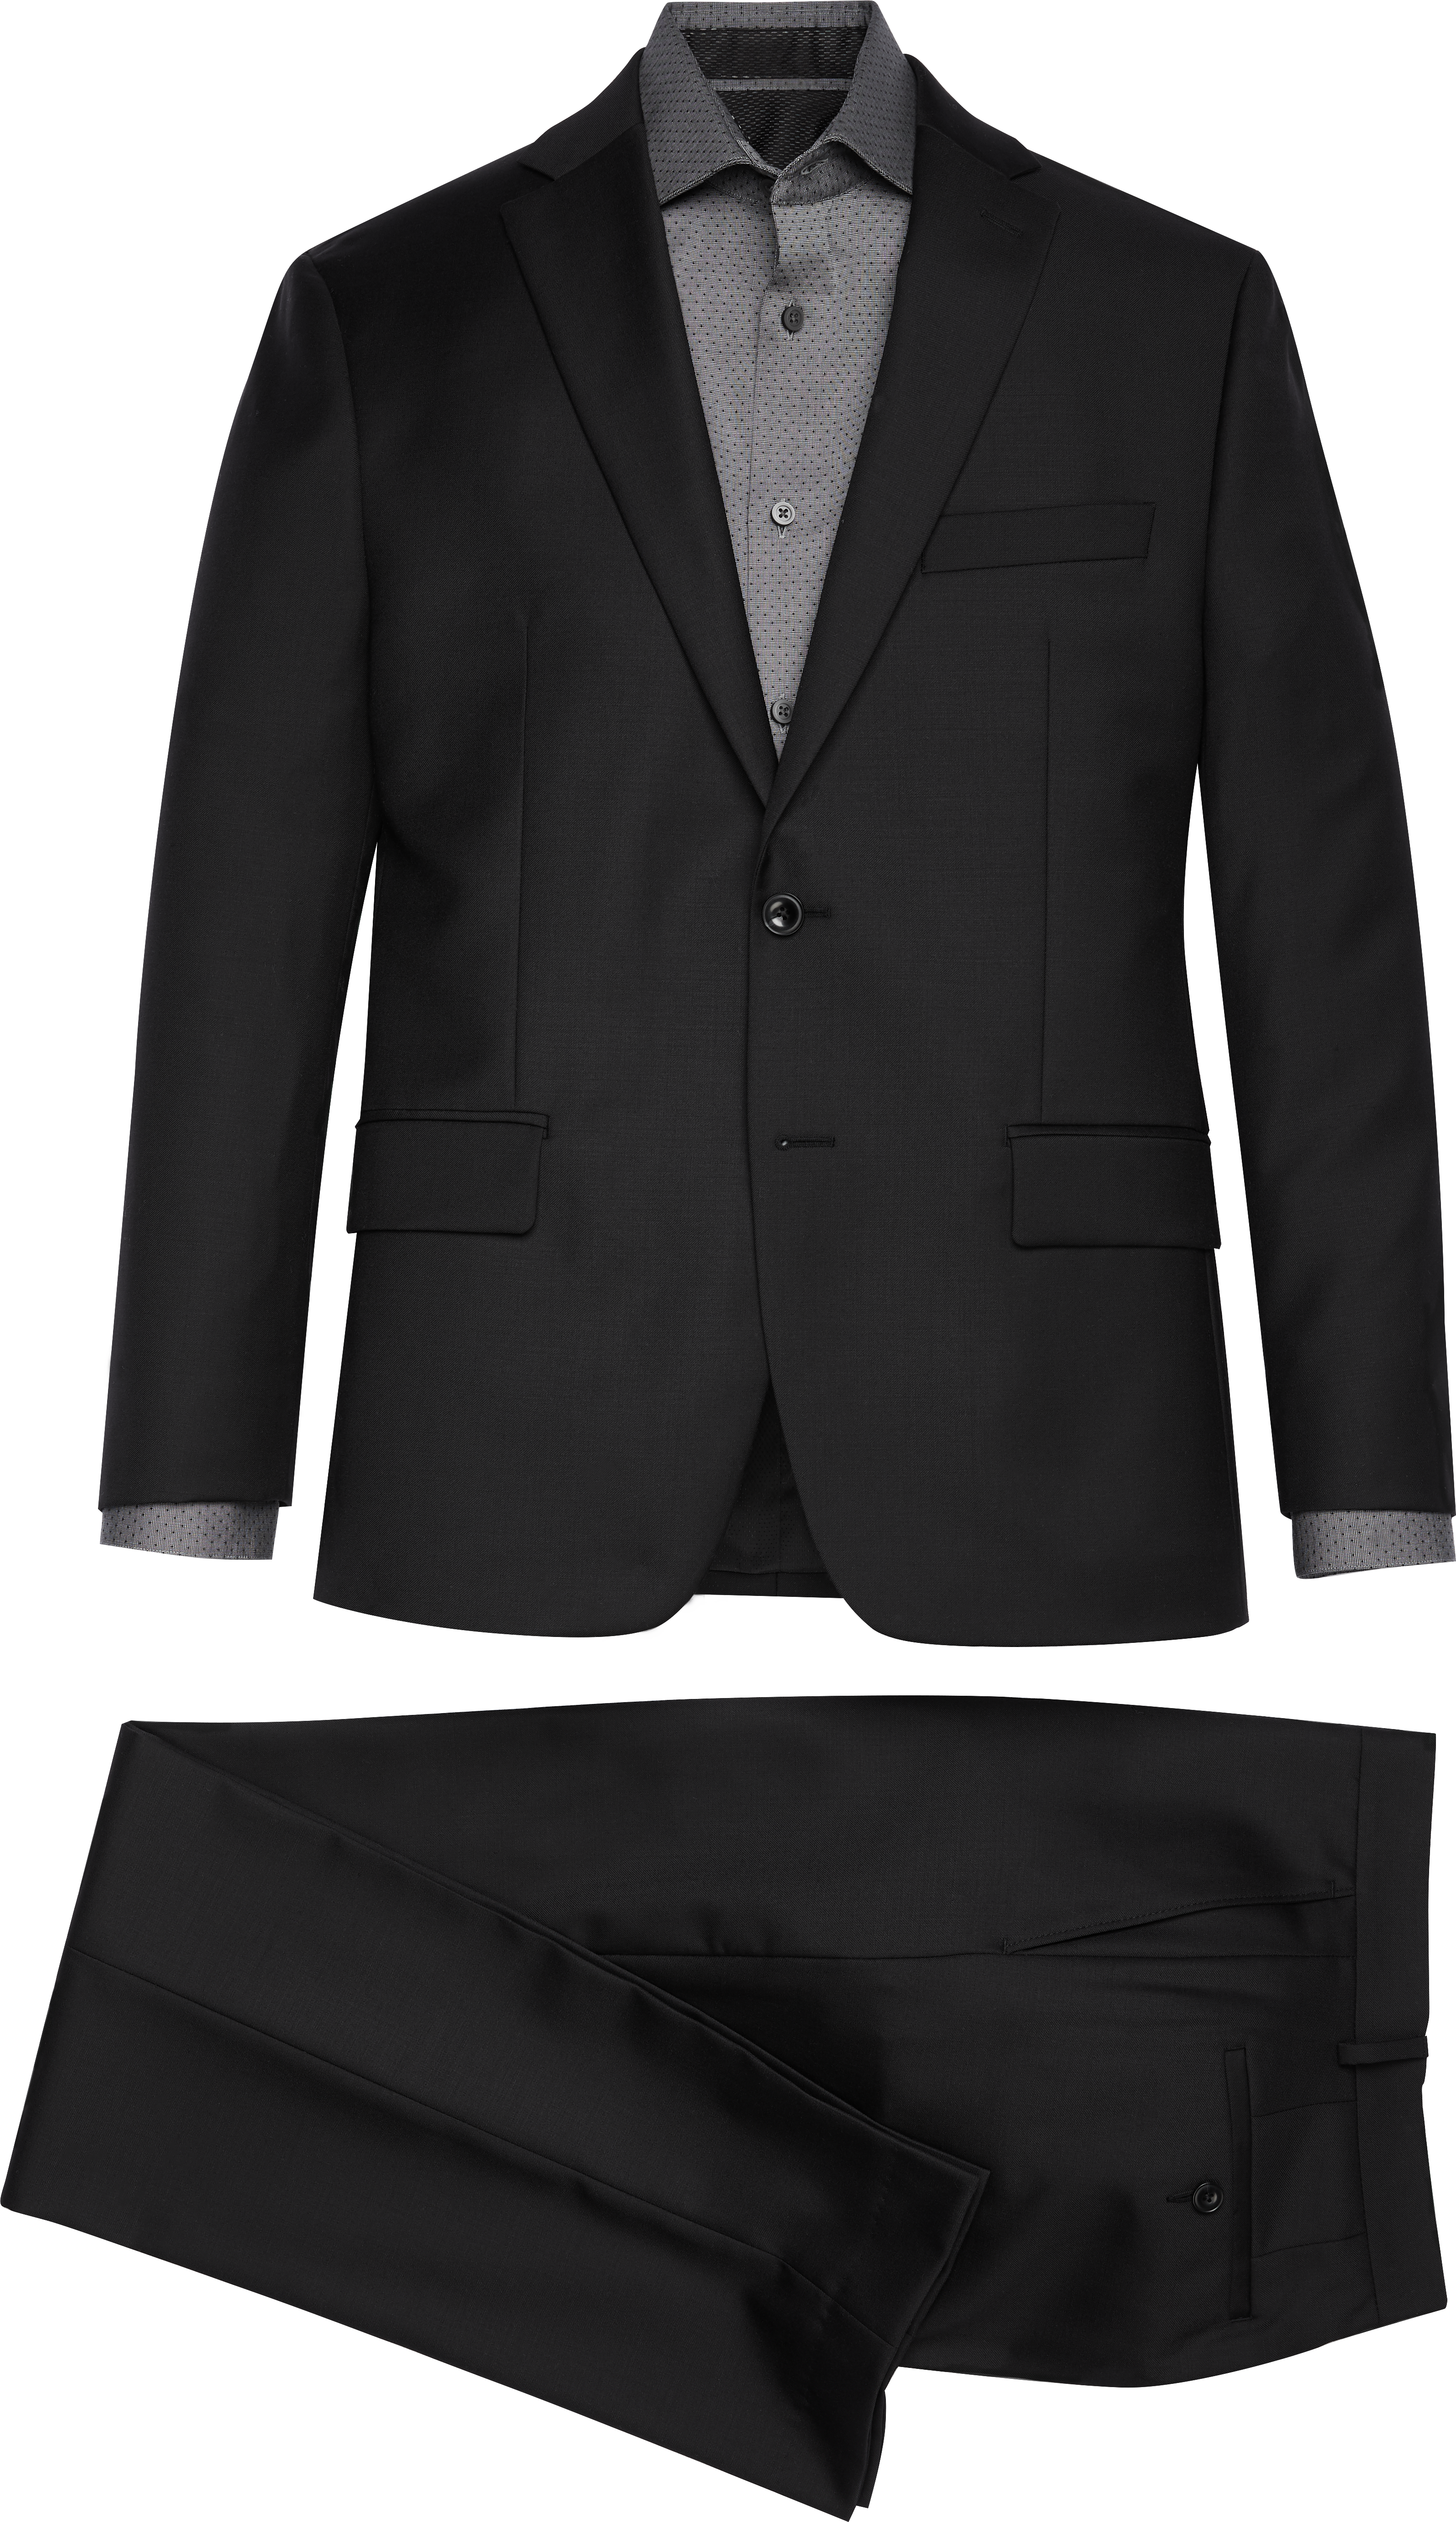 Michael Kors Black Modern Fit Suit 